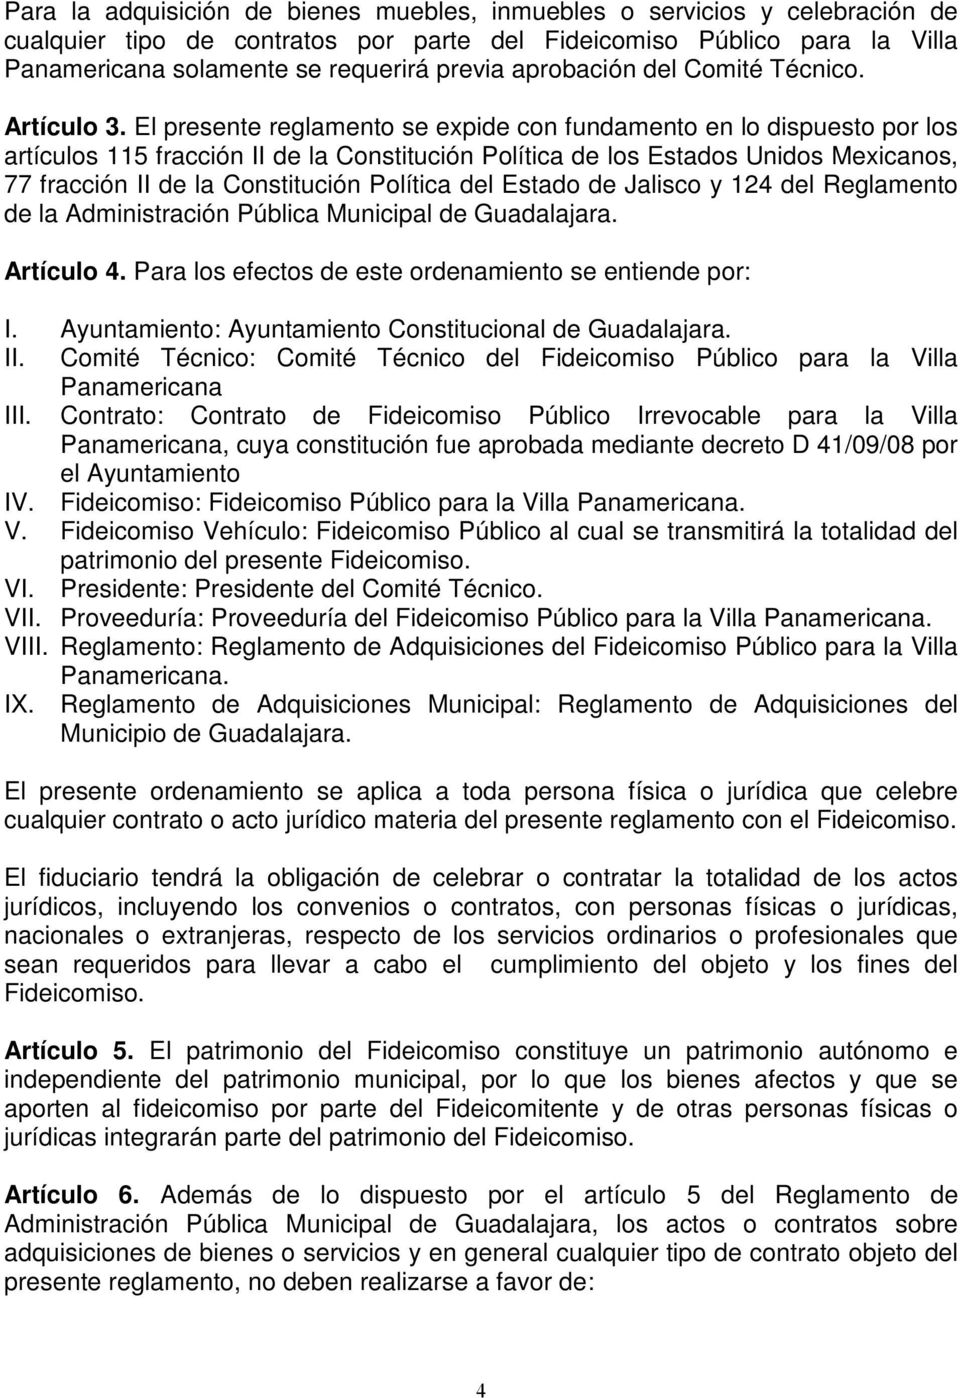 El presente reglamento se expide con fundamento en lo dispuesto por los artículos 115 fracción II de la Constitución Política de los Estados Unidos Mexicanos, 77 fracción II de la Constitución